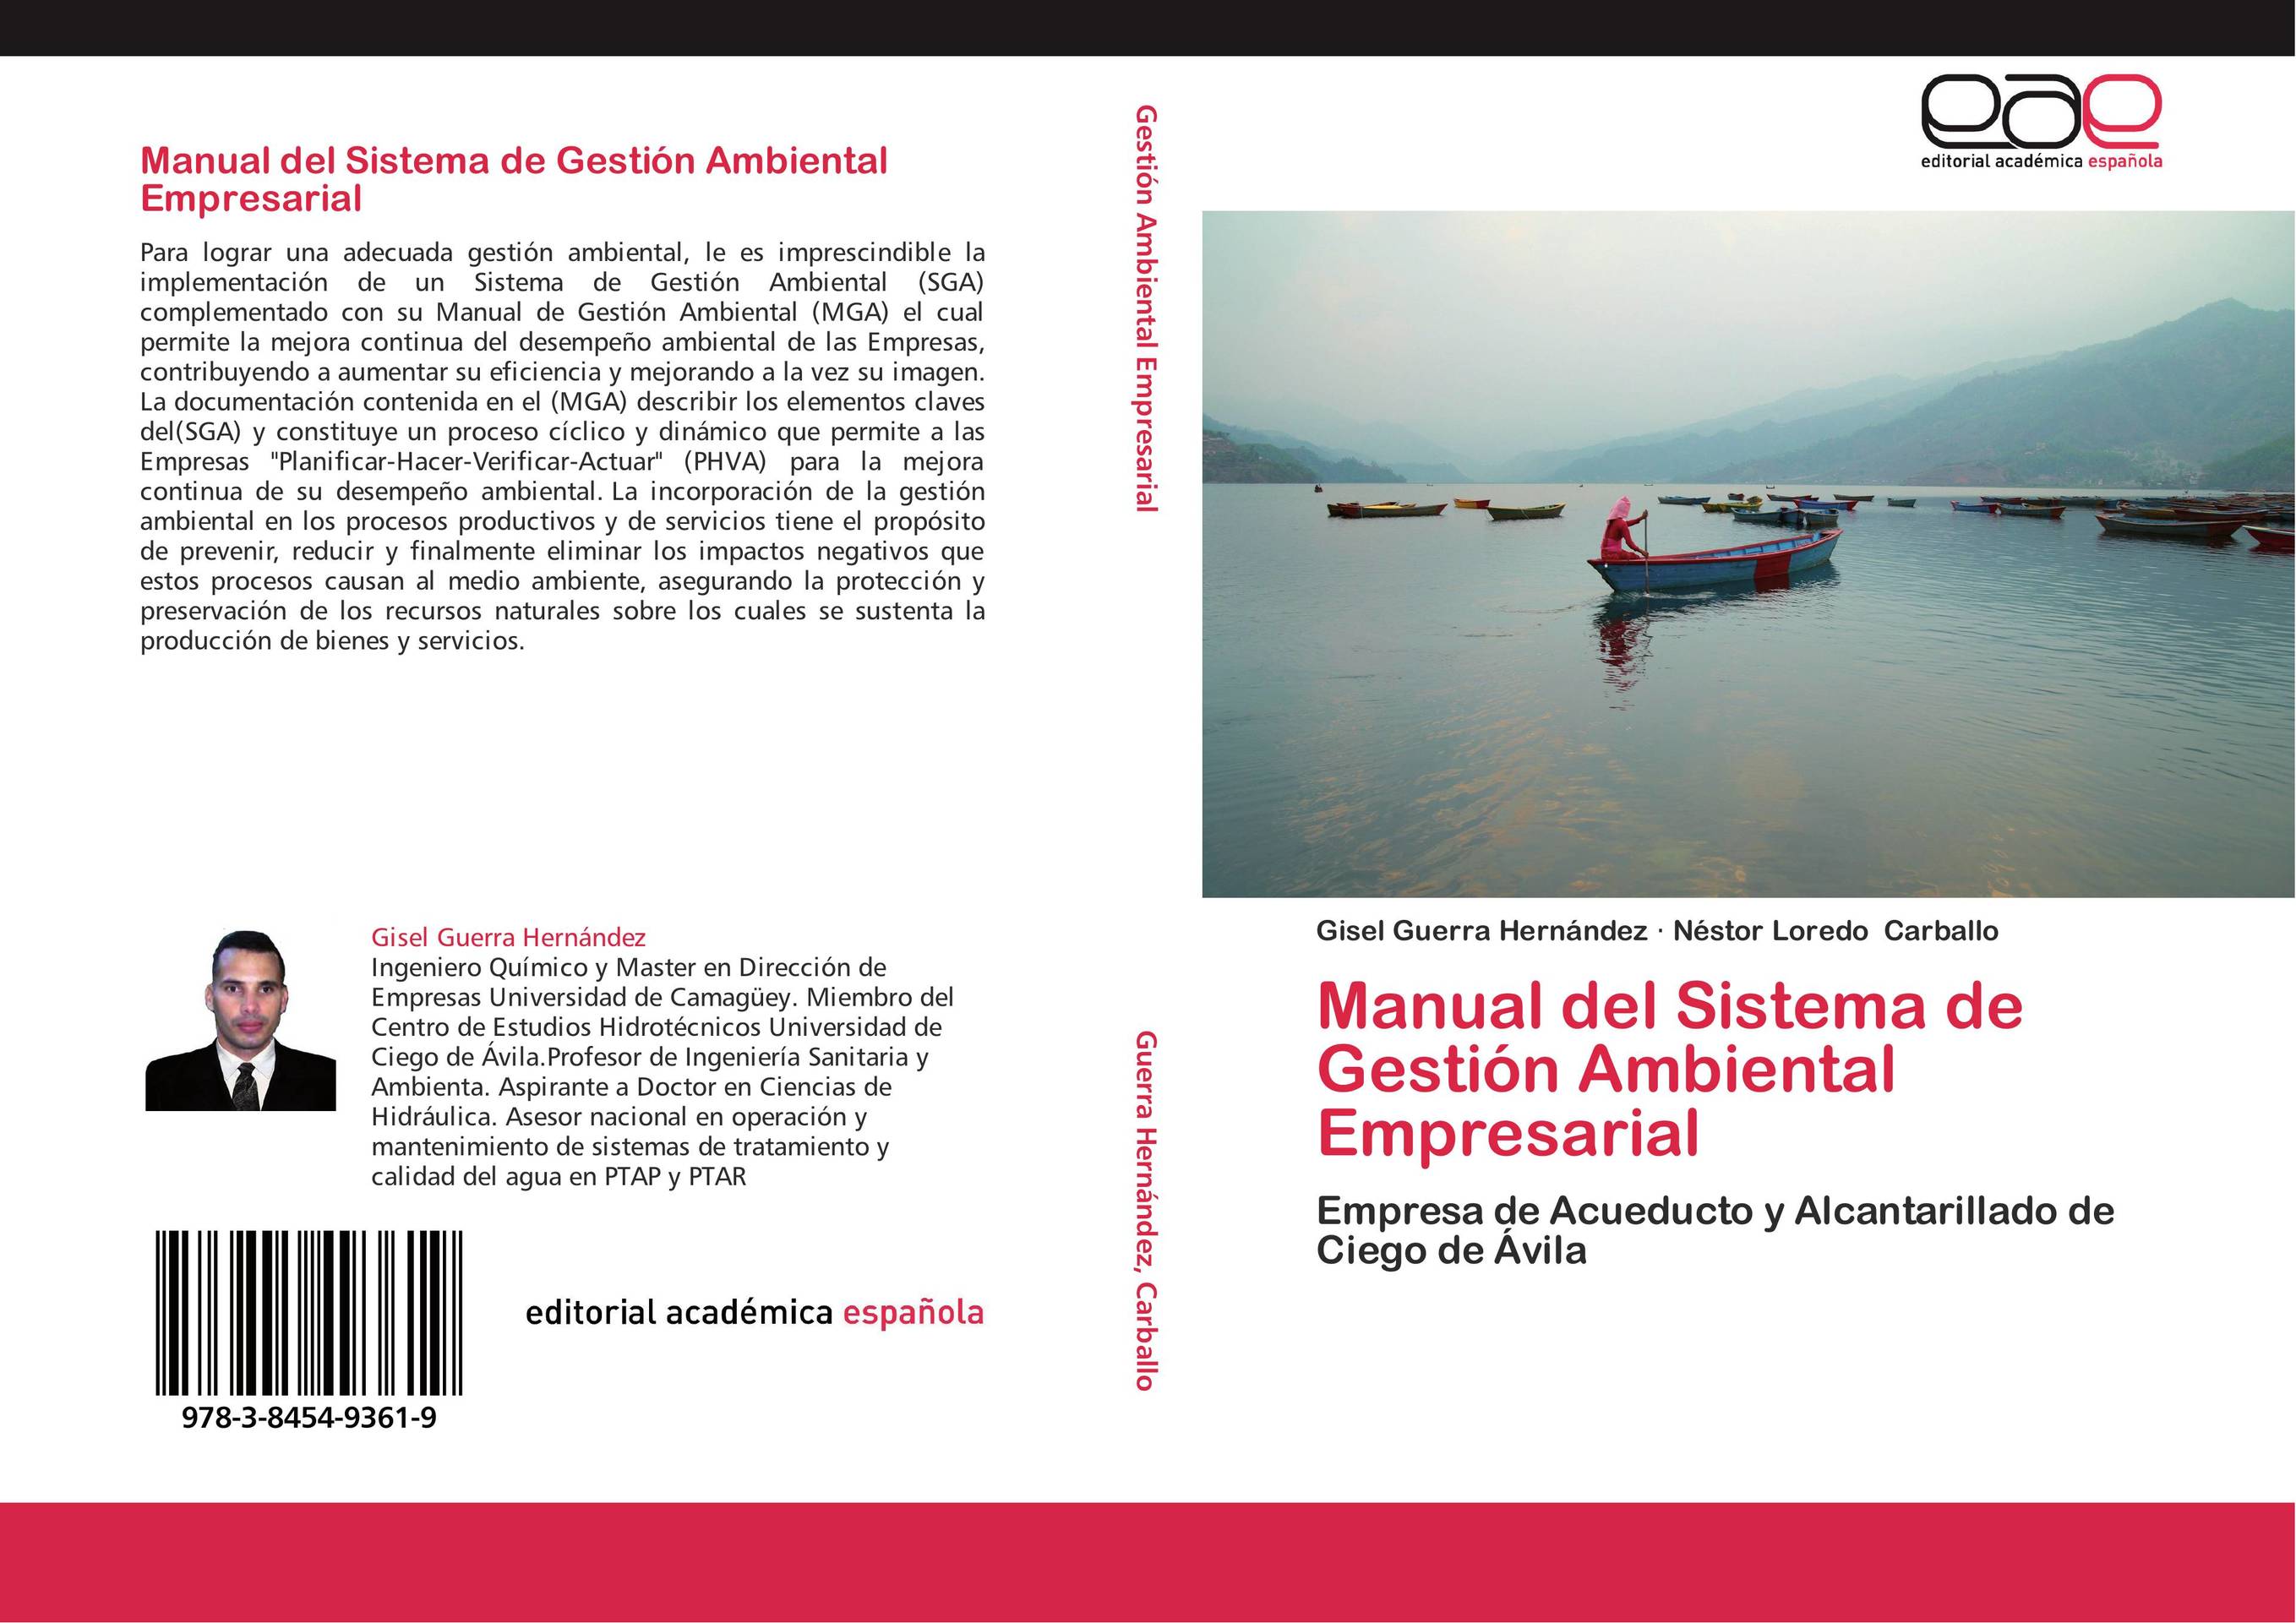 Manual del Sistema de Gestión Ambiental Empresarial